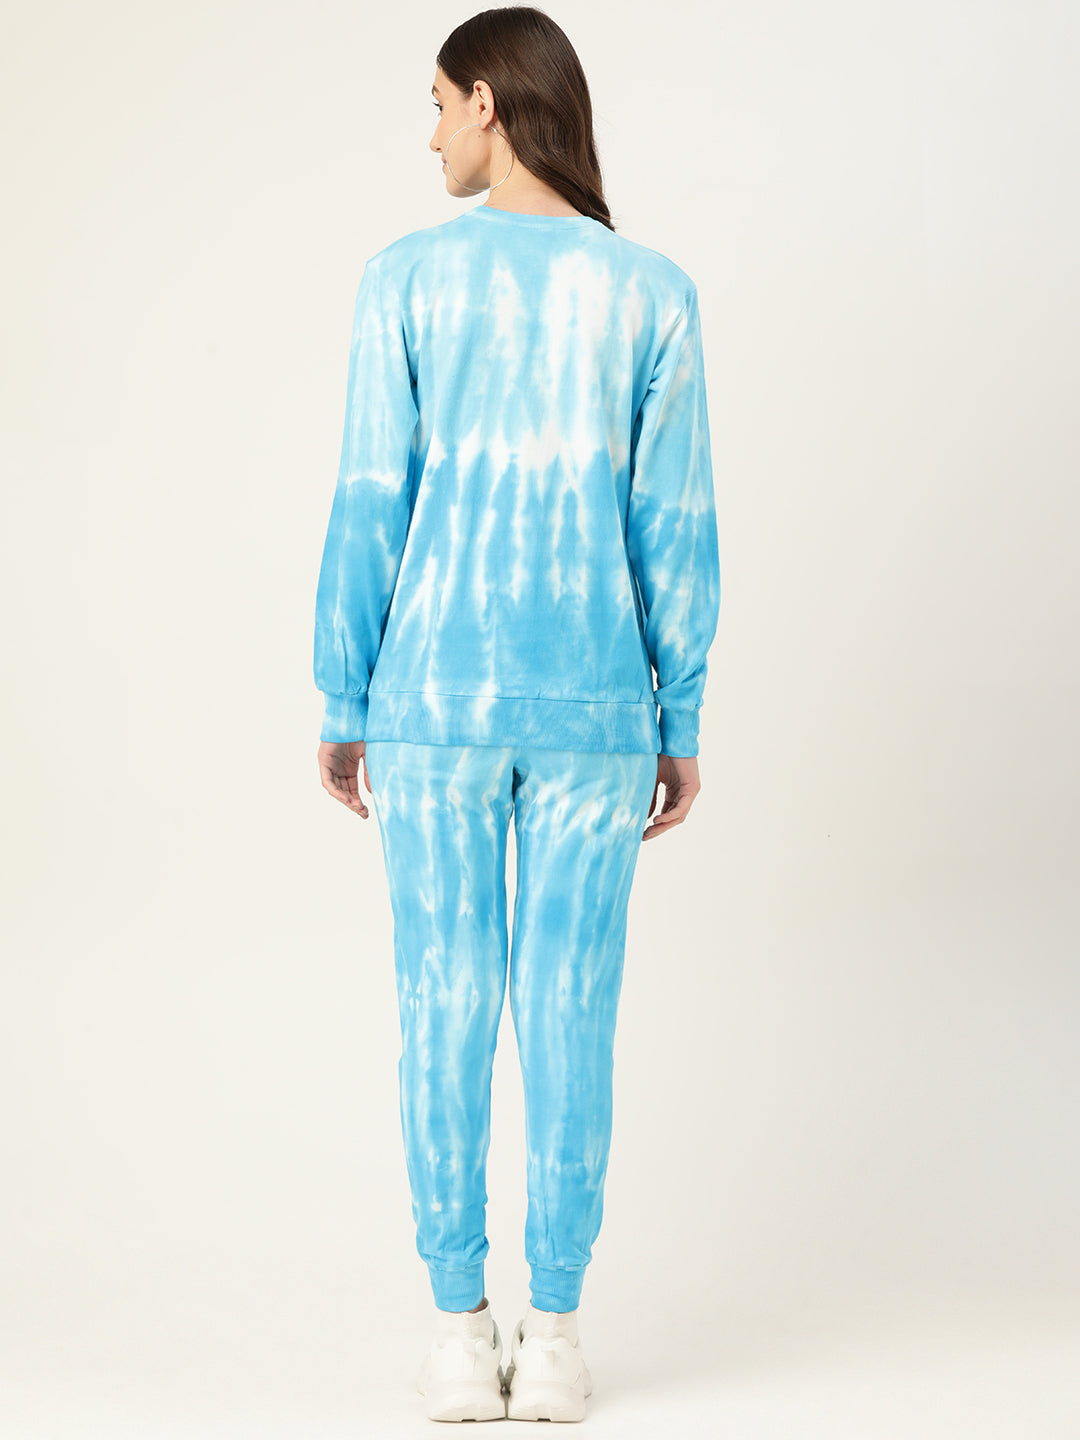 Women's Blue Ombre Dye Sweatshirt With Joggers - Maaesa